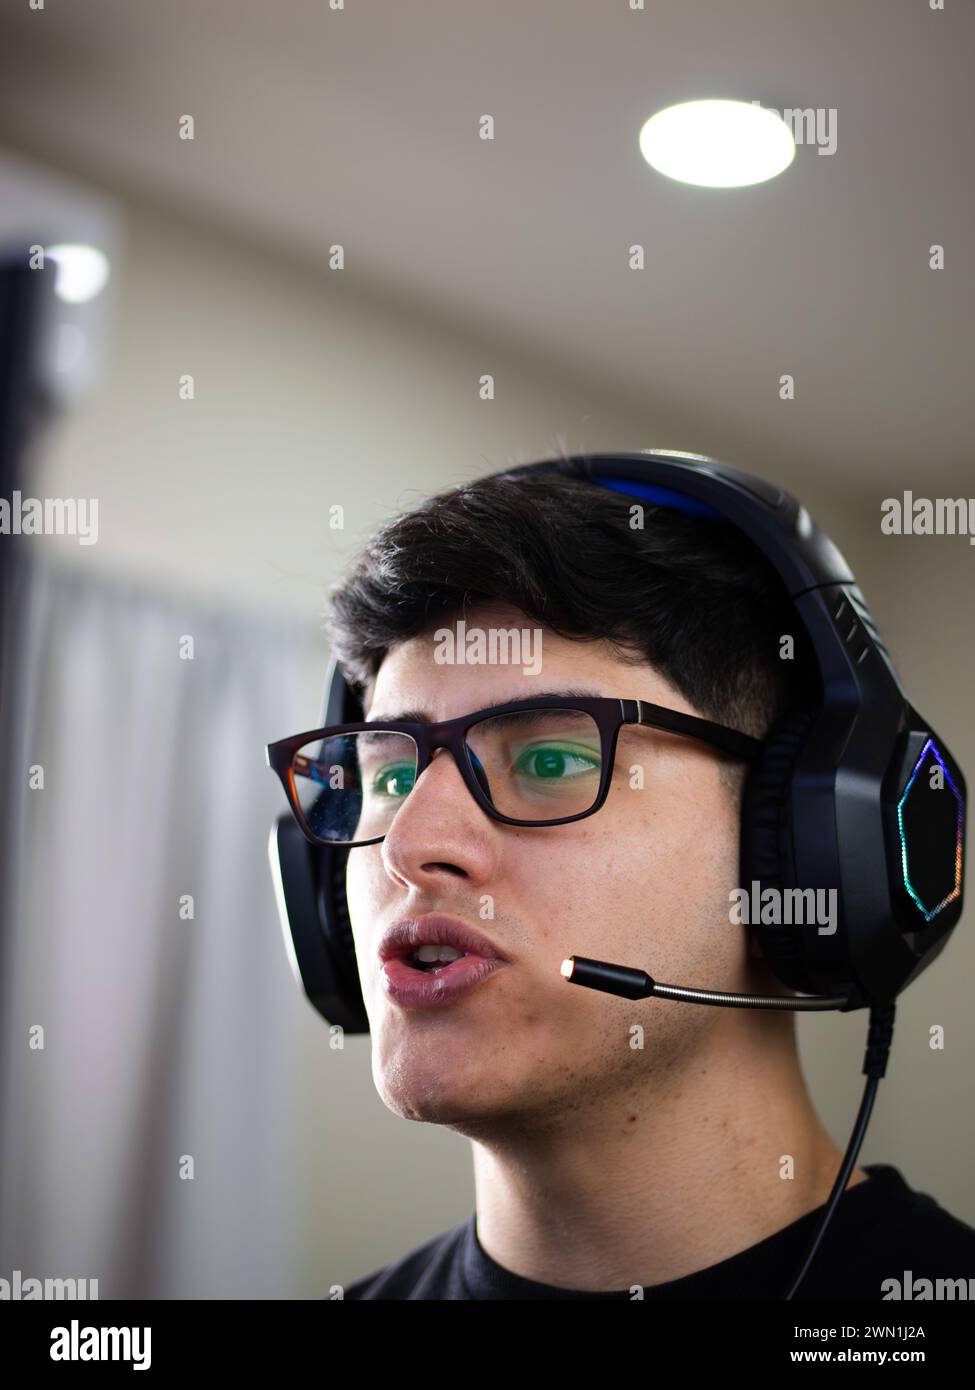 Ein gutaussehender junger Mann aus Kaukasien, der Brille und Kopfhörer trägt, hält einen Live-Talk, entweder indem er einen Kurs anbietet oder an einem Online-Studium teilnimmt Stockfoto